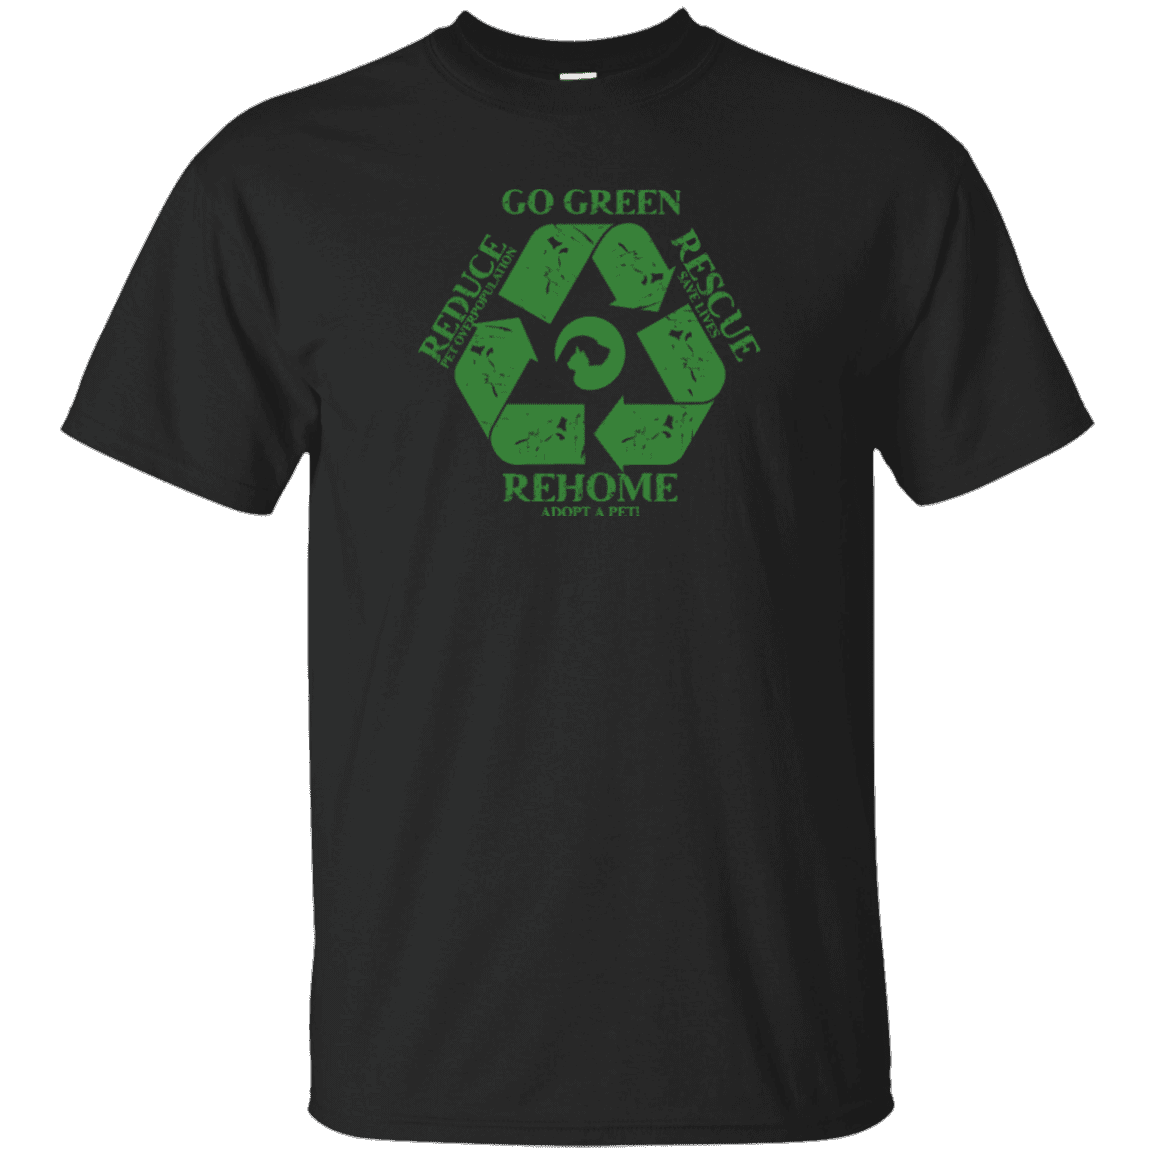 Go Green - T Shirt.